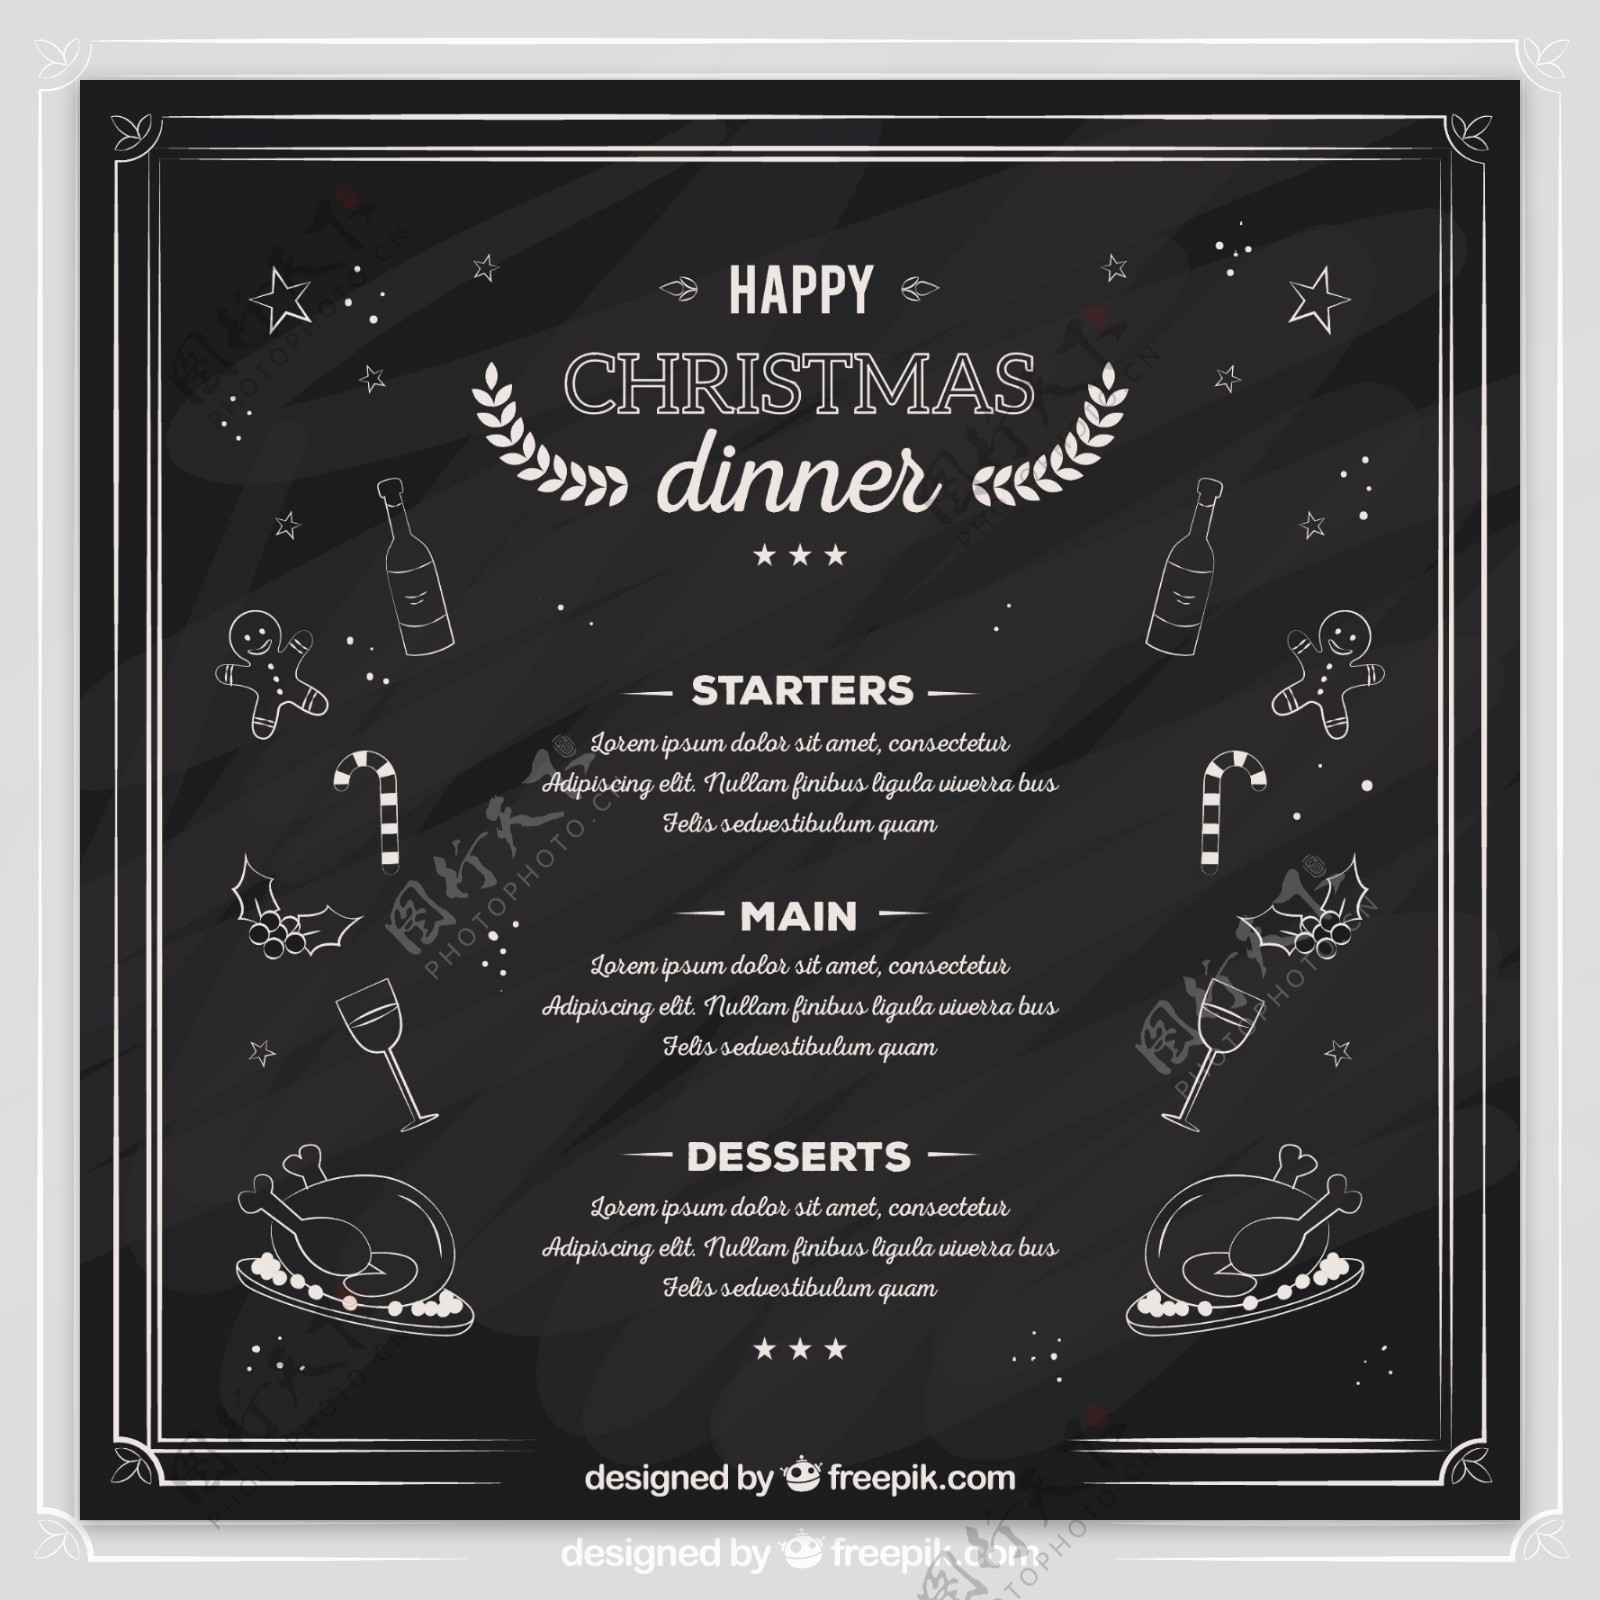 粗略的圣诞晚餐菜单黑板